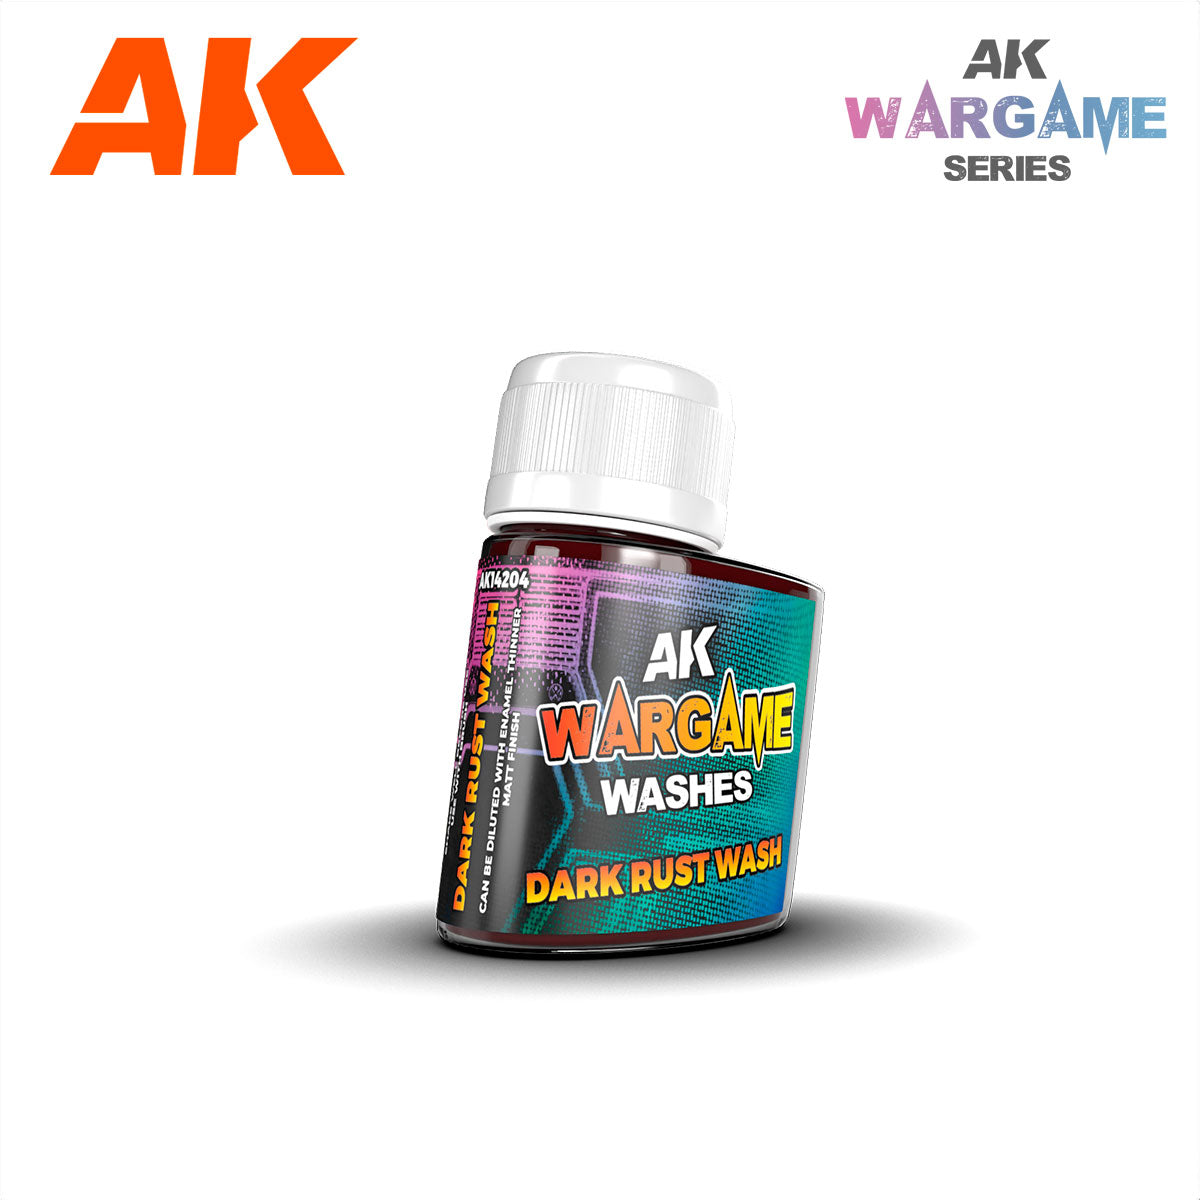 AK14204 - Dark Rust wash (35ml) - Wargame Wash